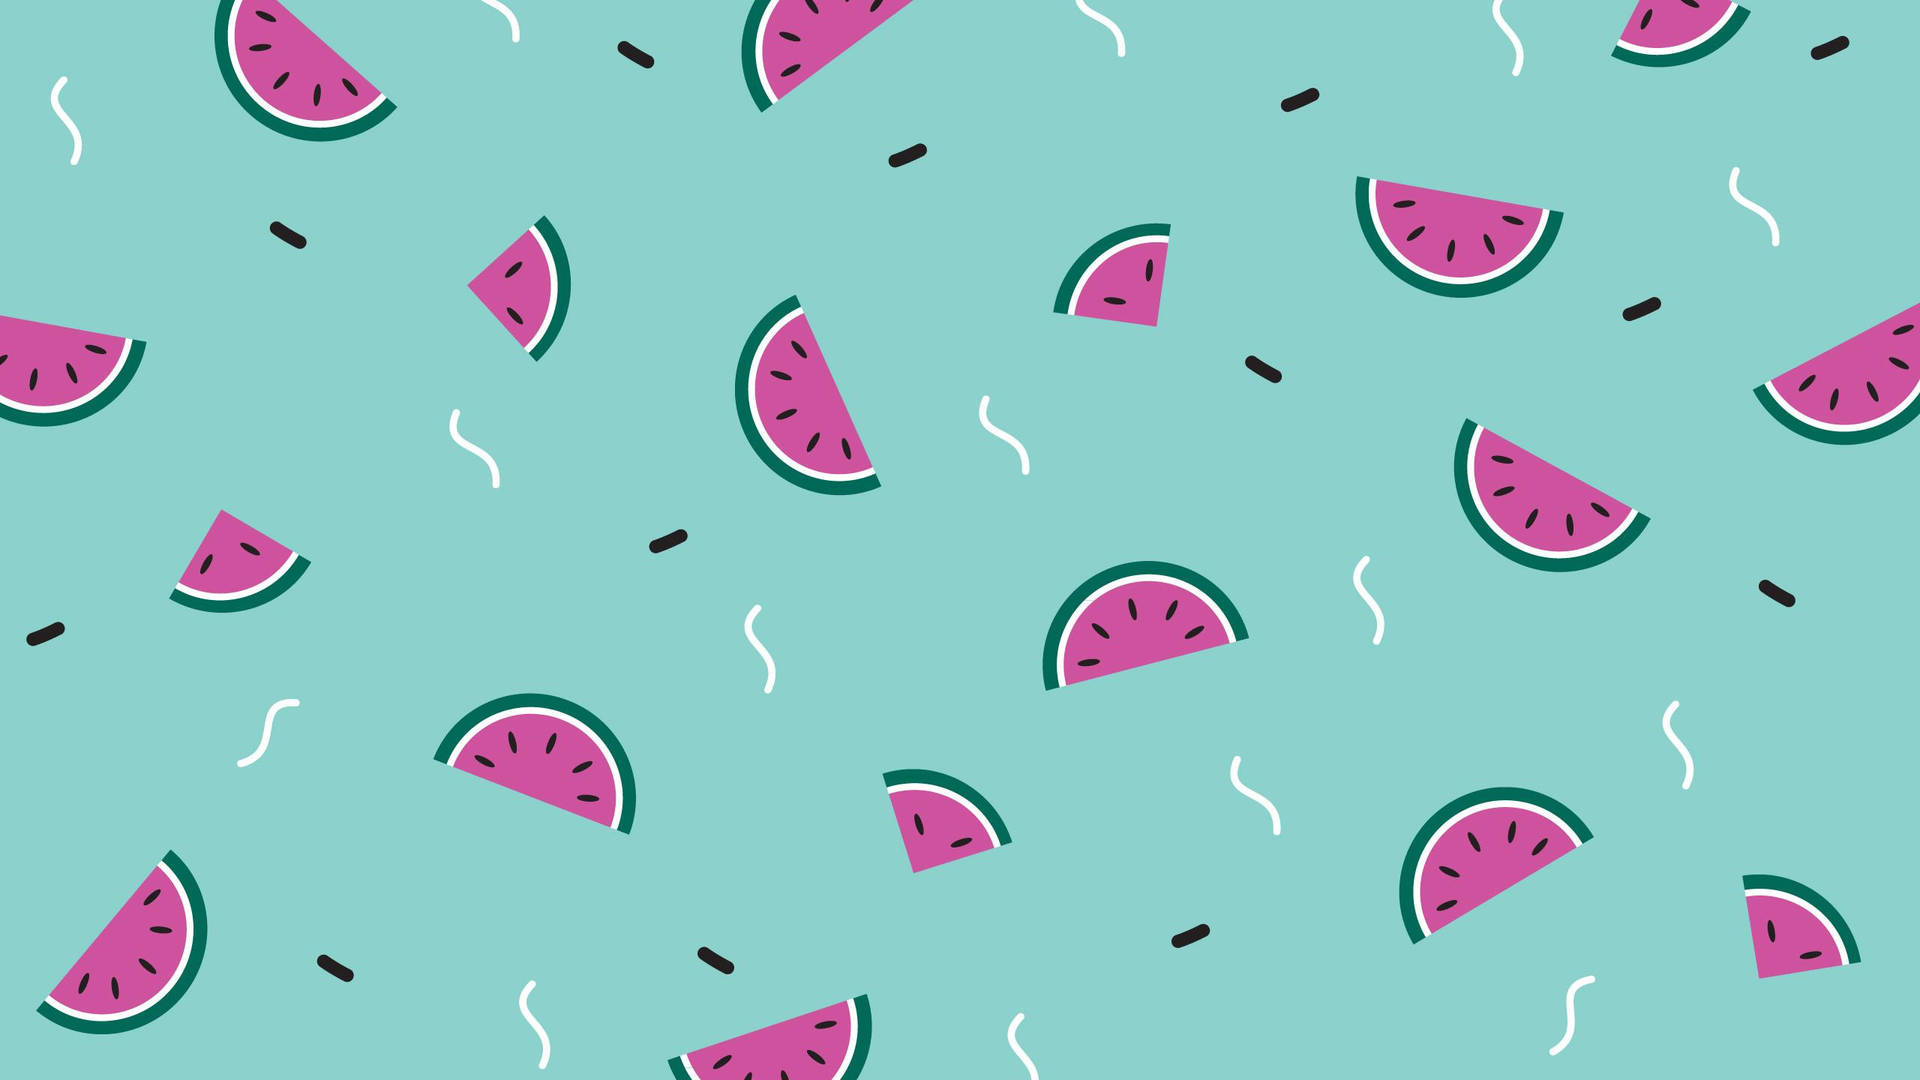 Fun Pattern Art Of Cute Watermelon Design